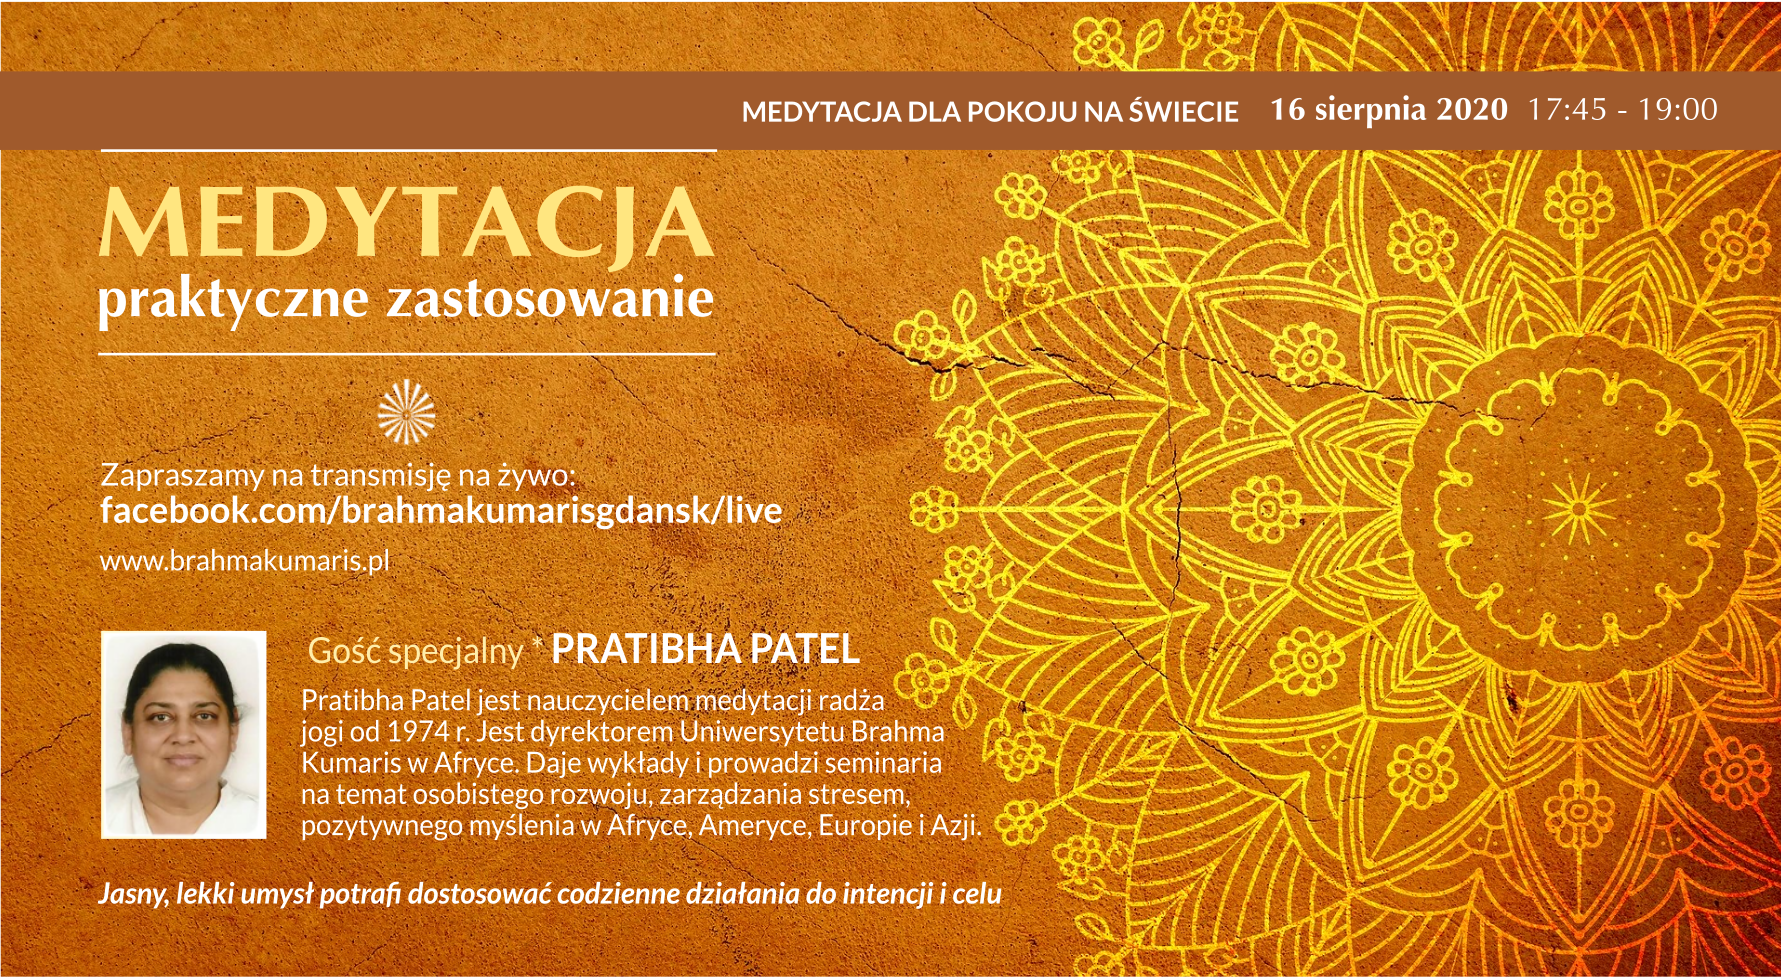 Medytacja - praktyczne zastosowanie. Spotkanie online z Pratibhą Patel w ramach Medytacji dla pokoju na świecie @ wydarzenie online FB brahmakumarisgdansk/live/